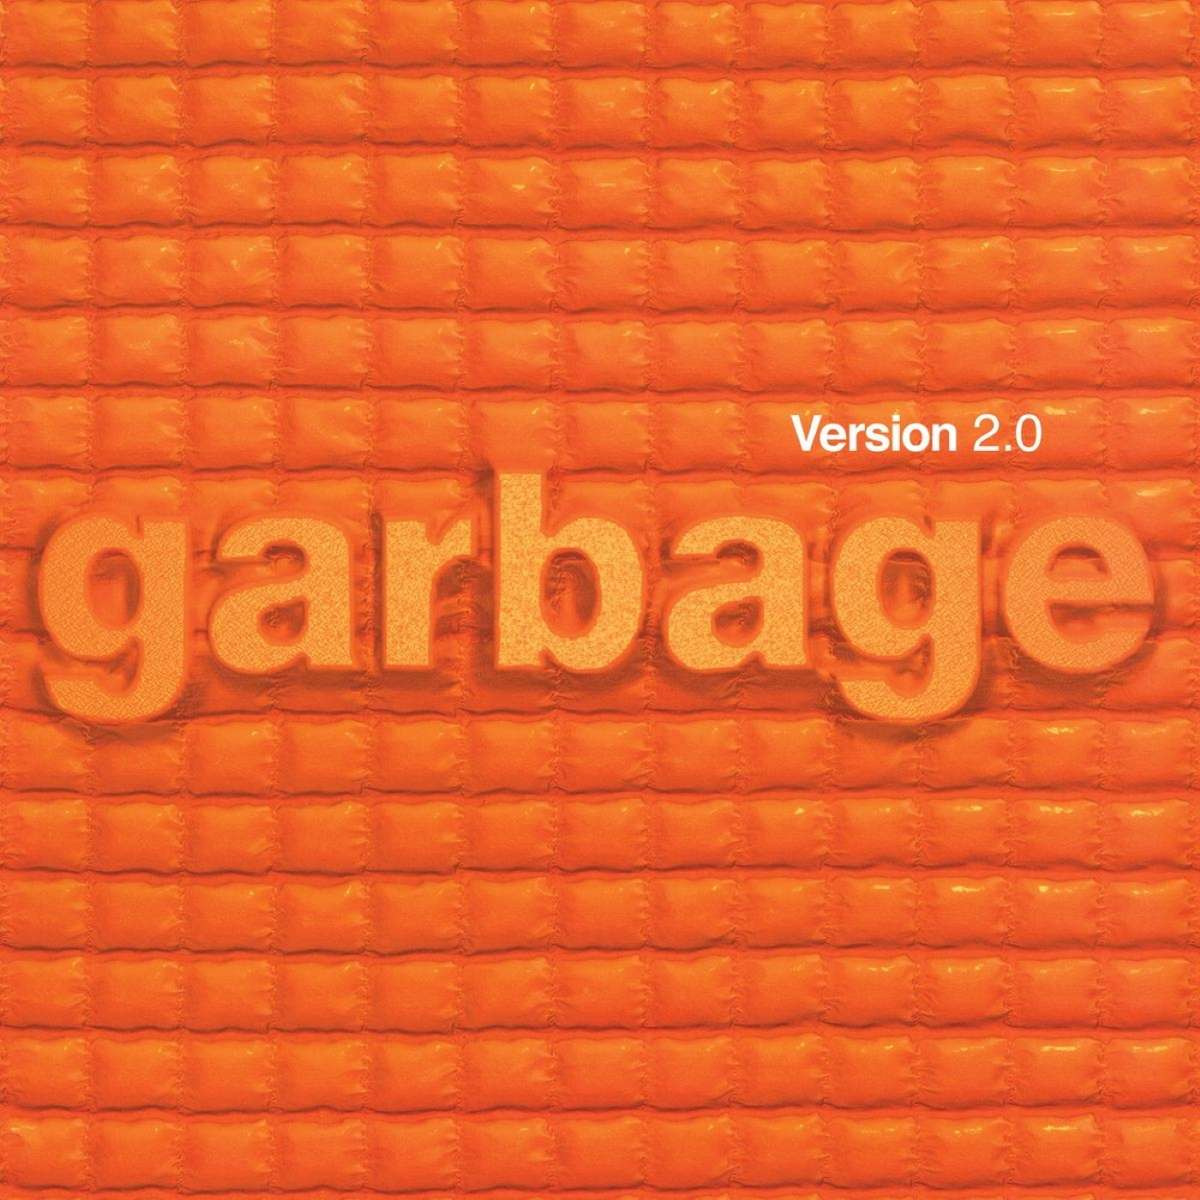 Рок BMG Garbage - Version 2.0  (Coloured Vinyl 2LP) tom waits swordfishtrombones cd